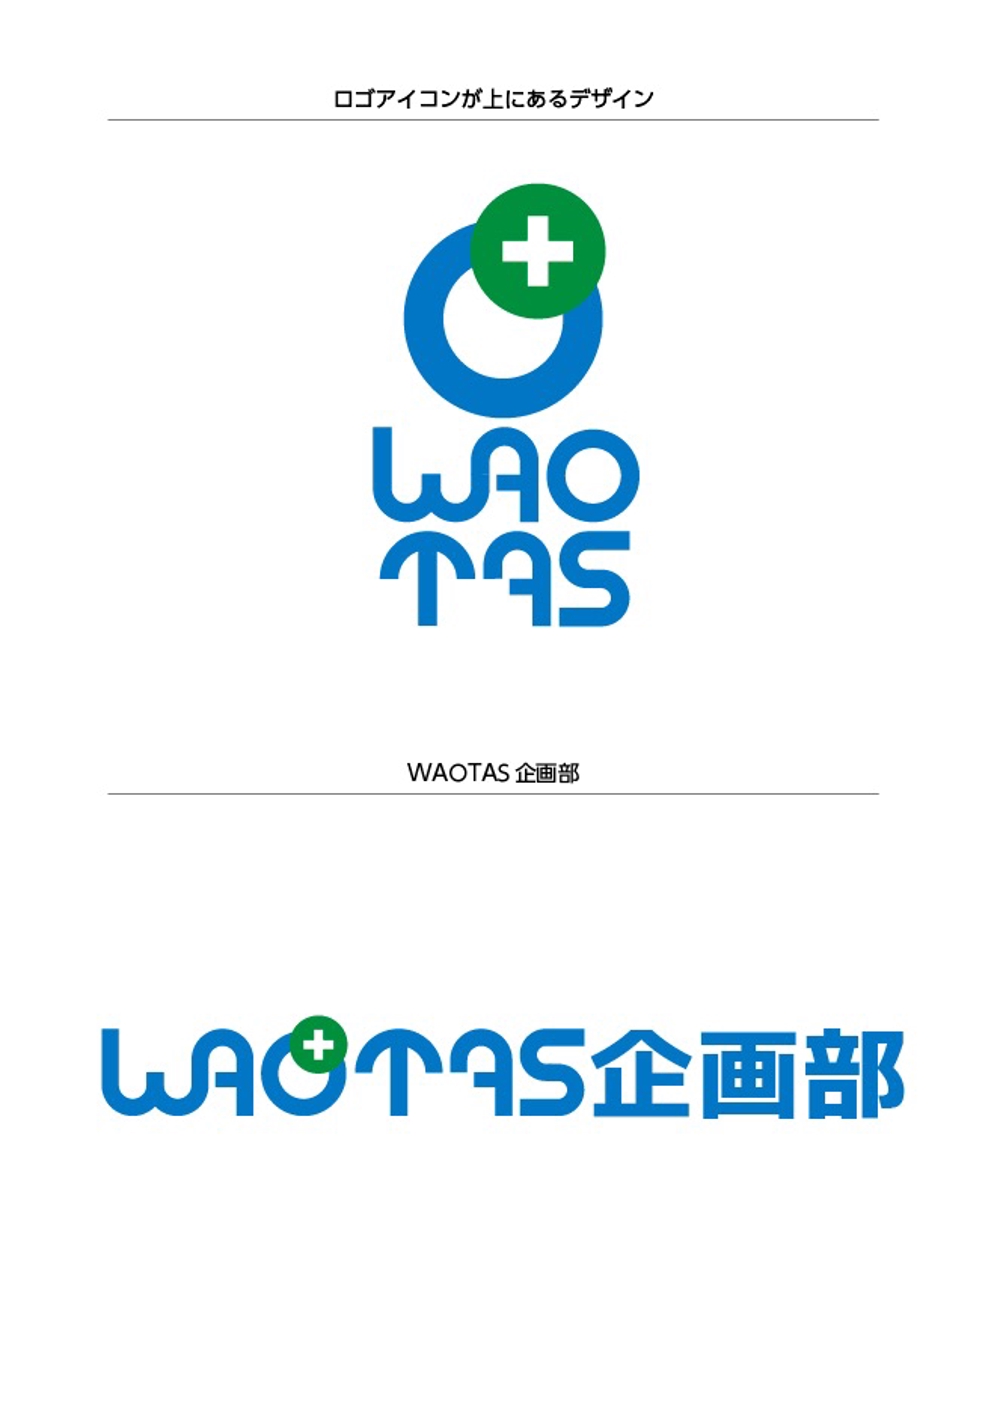 新規メディア「WAOTAS」ロゴデザインの募集